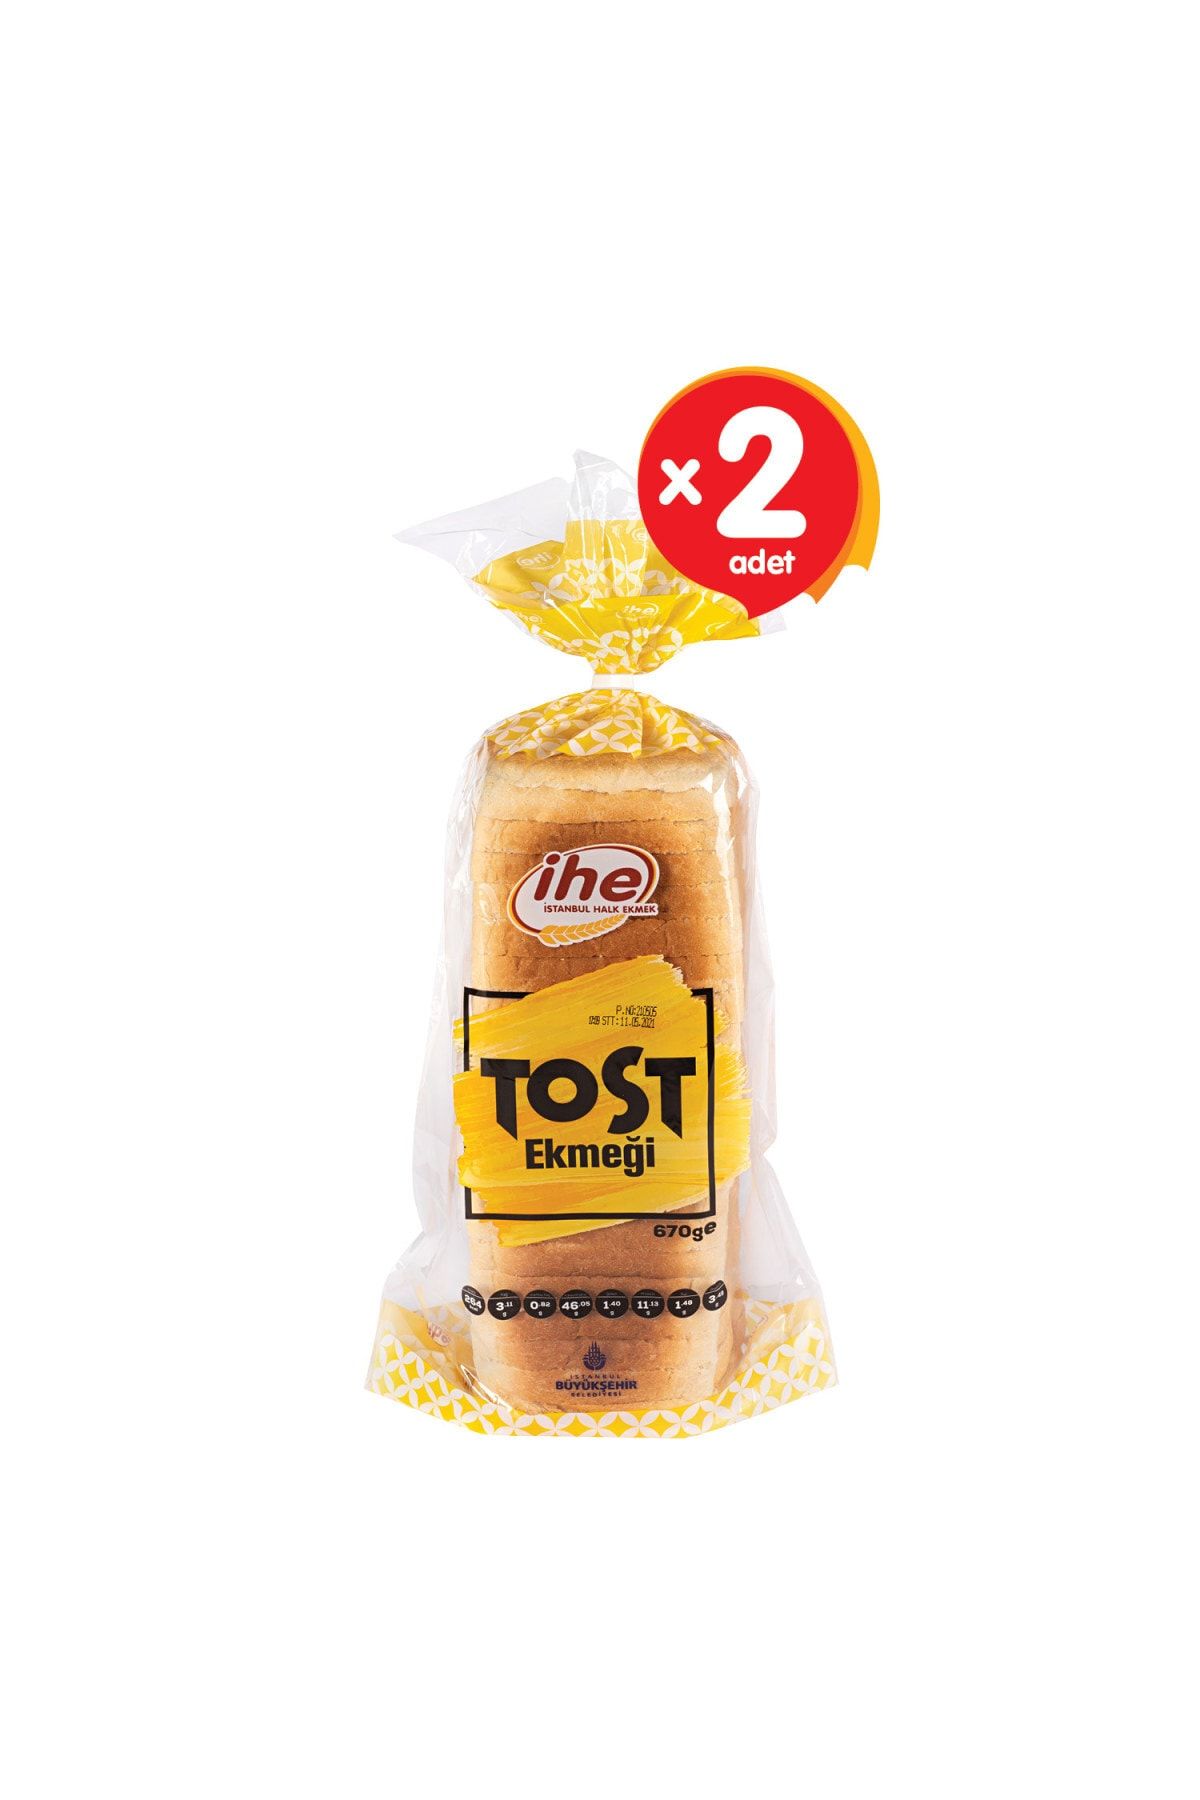 İhe Tost Ekmeği 670 G (2 ADET)